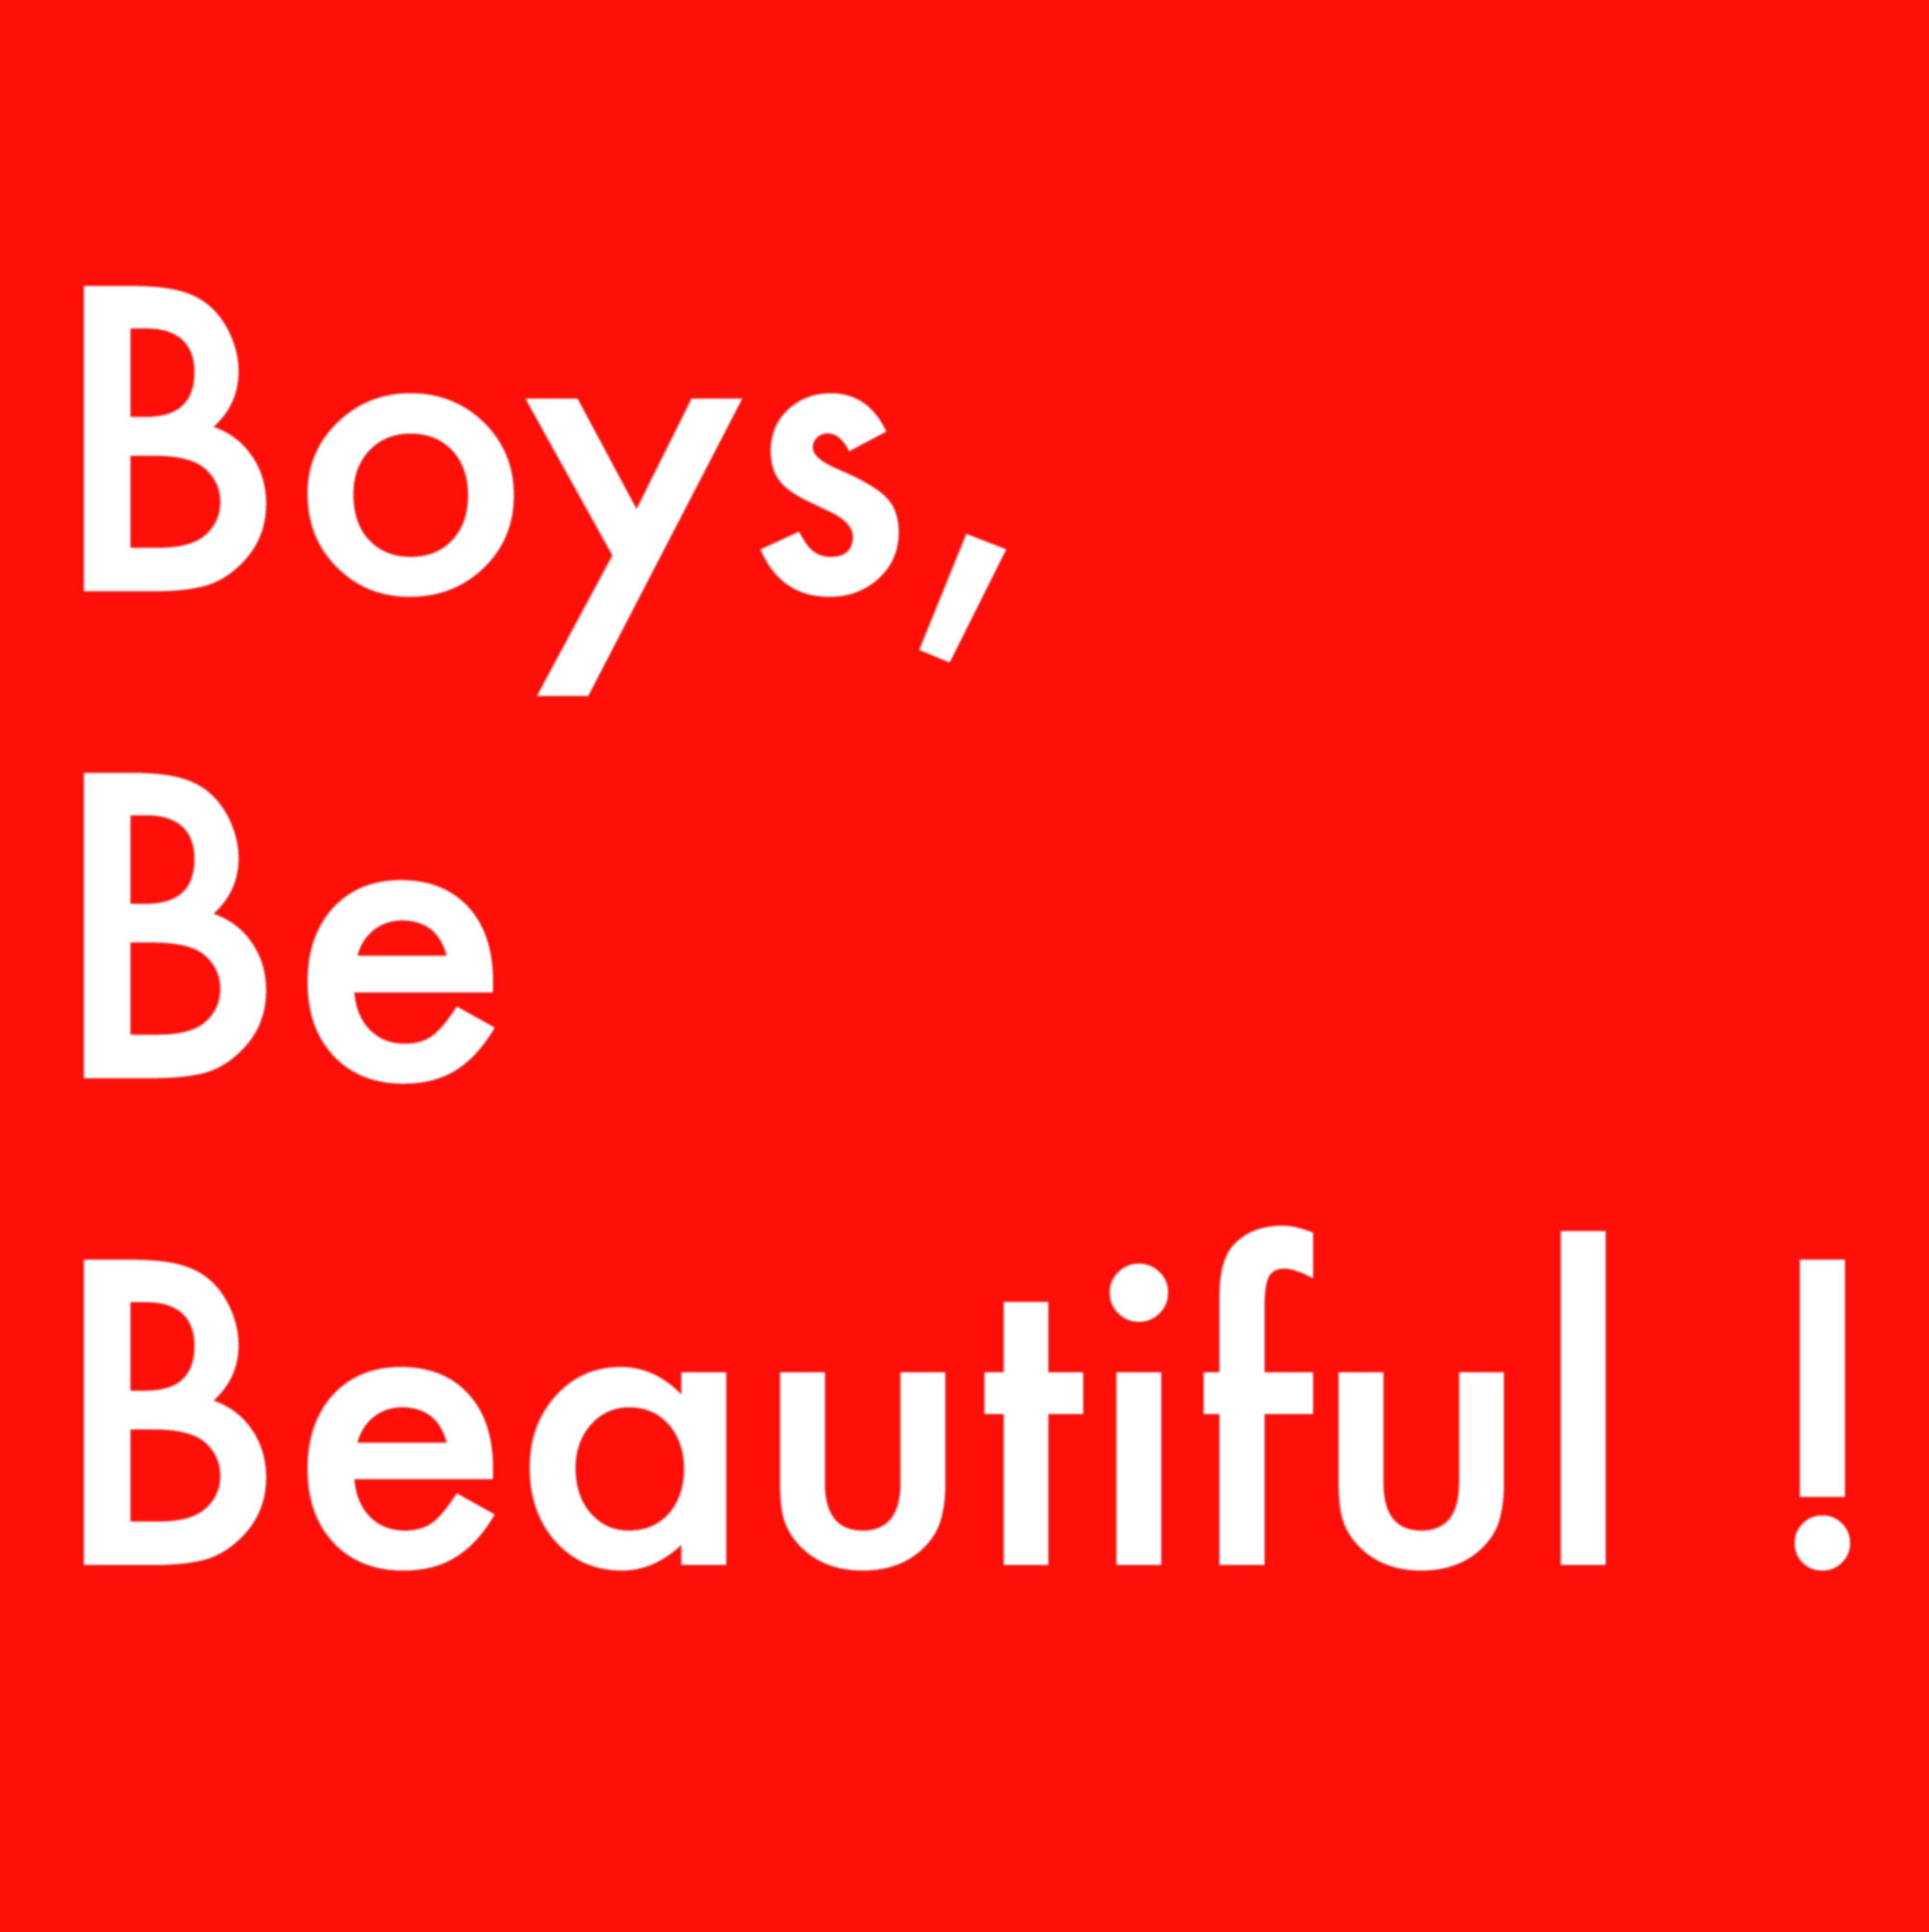 BOYS, BE BEAUTIFUL!